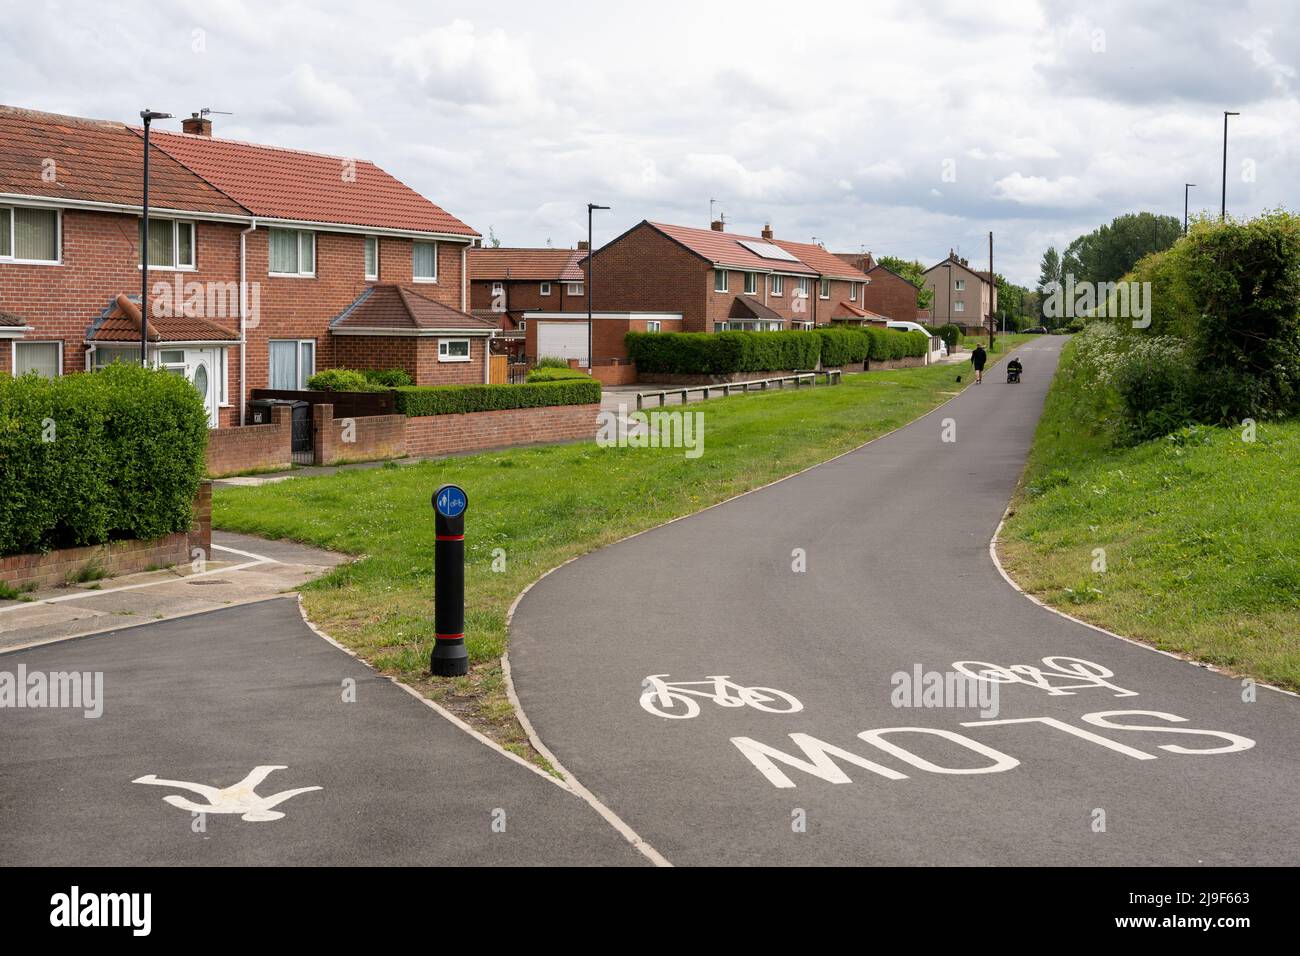 Ein Radweg am Rande eines britischen Wohngebiets. Longbenton, North Tyneside, Vereinigtes Königreich. Konzept des nachhaltigen Verkehrs. Stockfoto